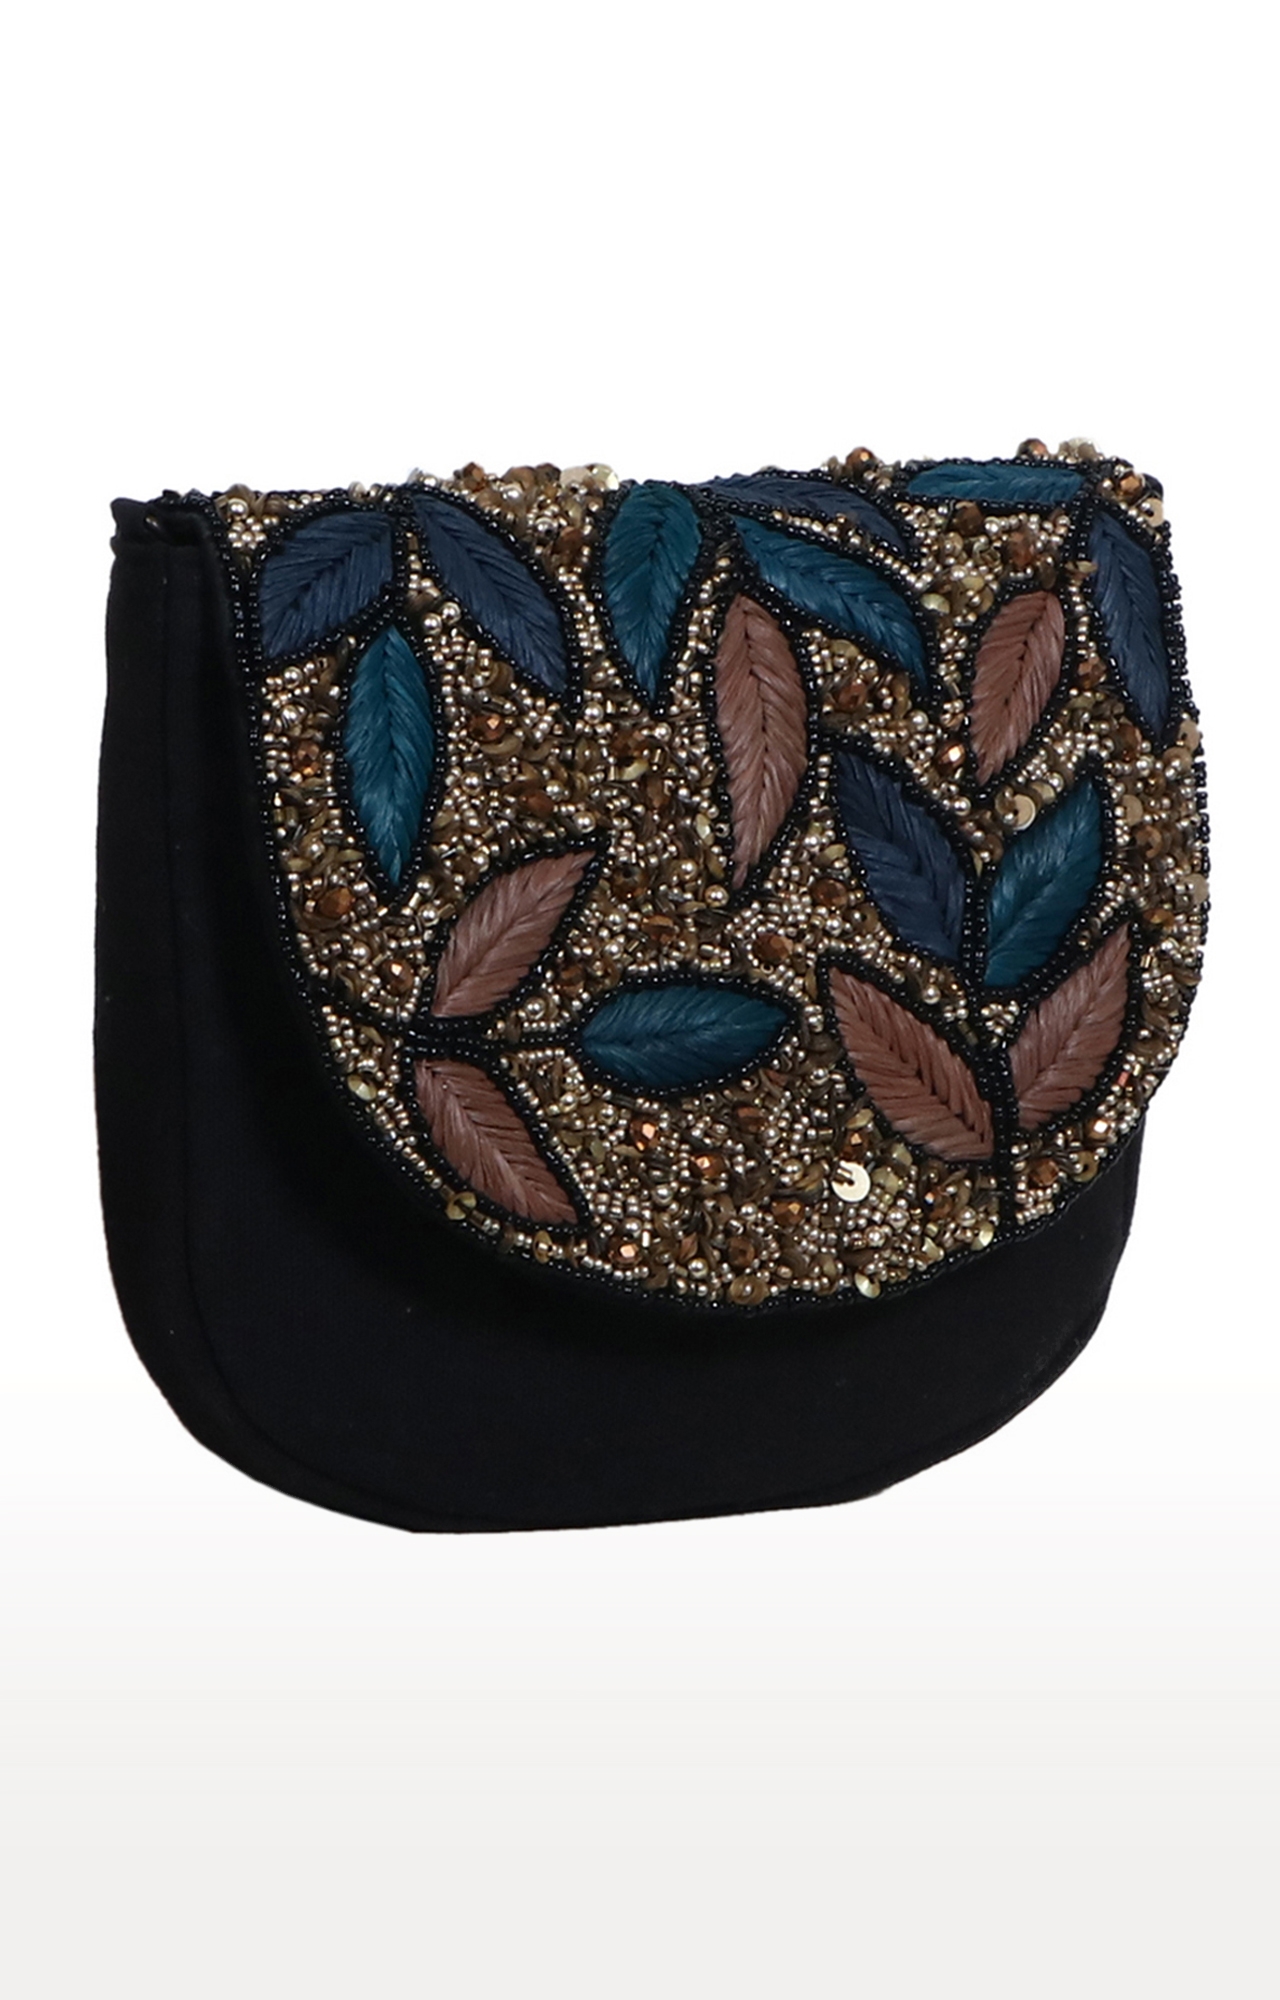 DIWAAH | Diwaah Multi Embellished Sling Bags